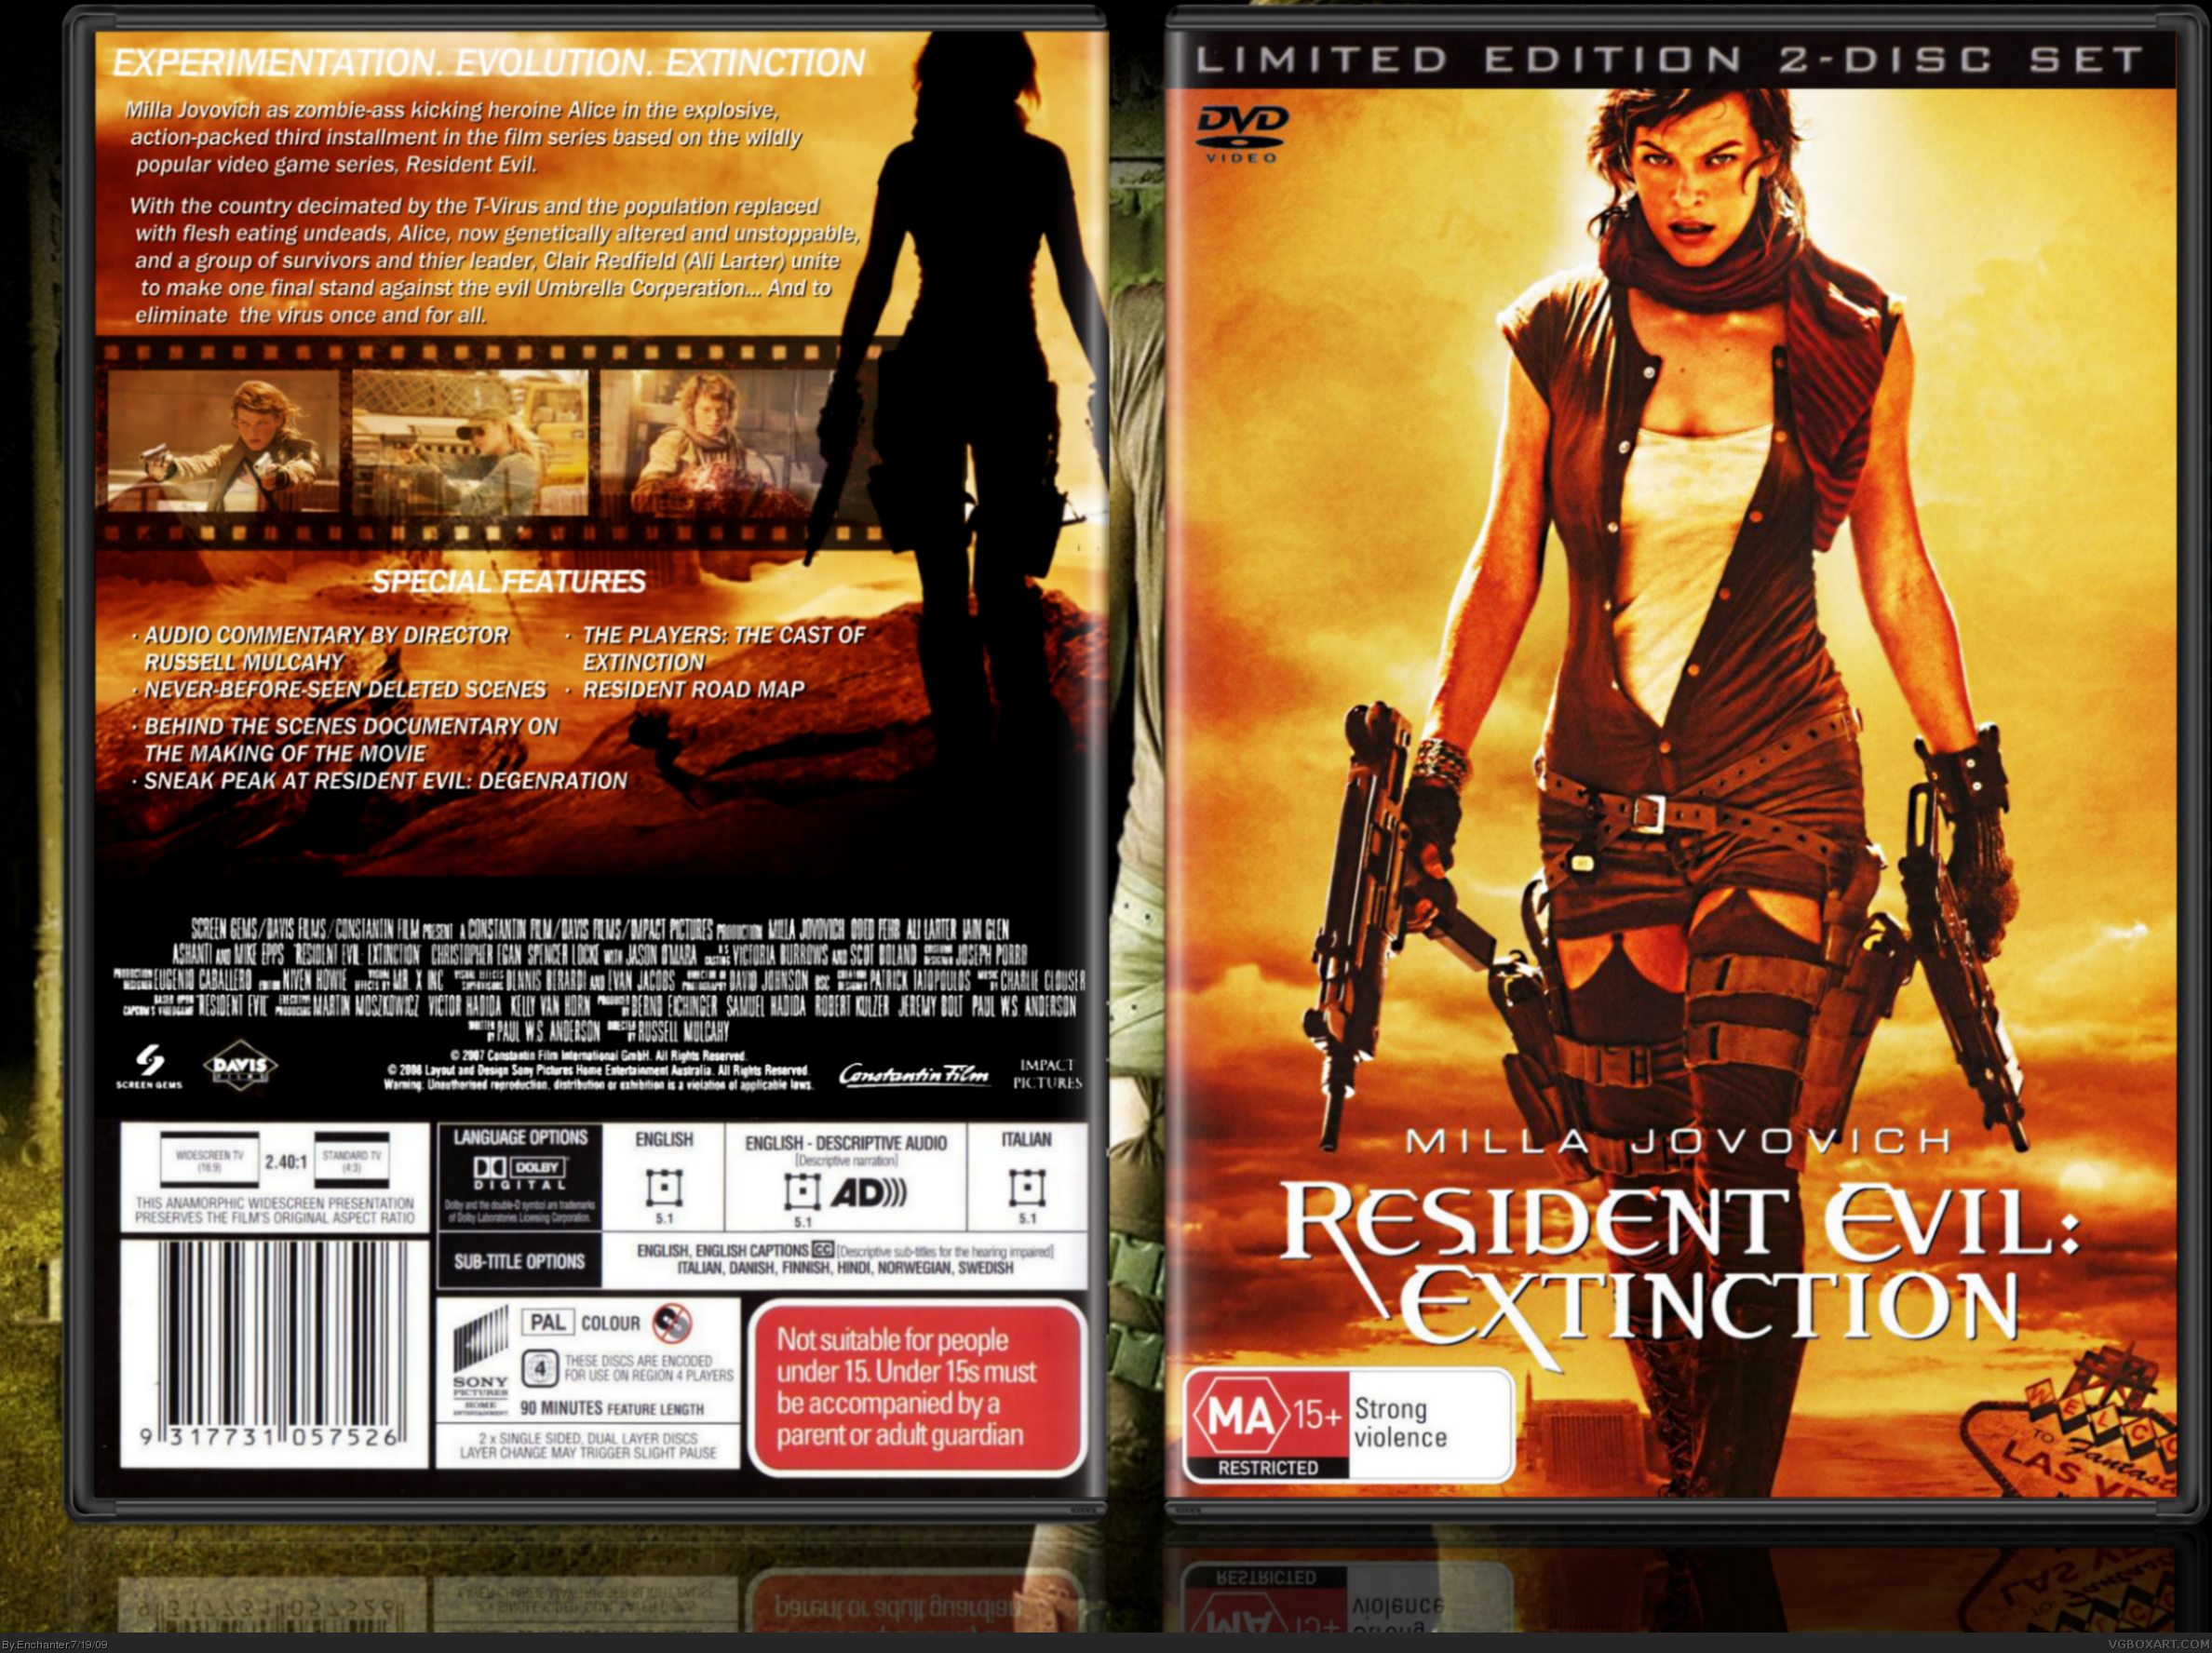 Resident Evil: Extinction box cover